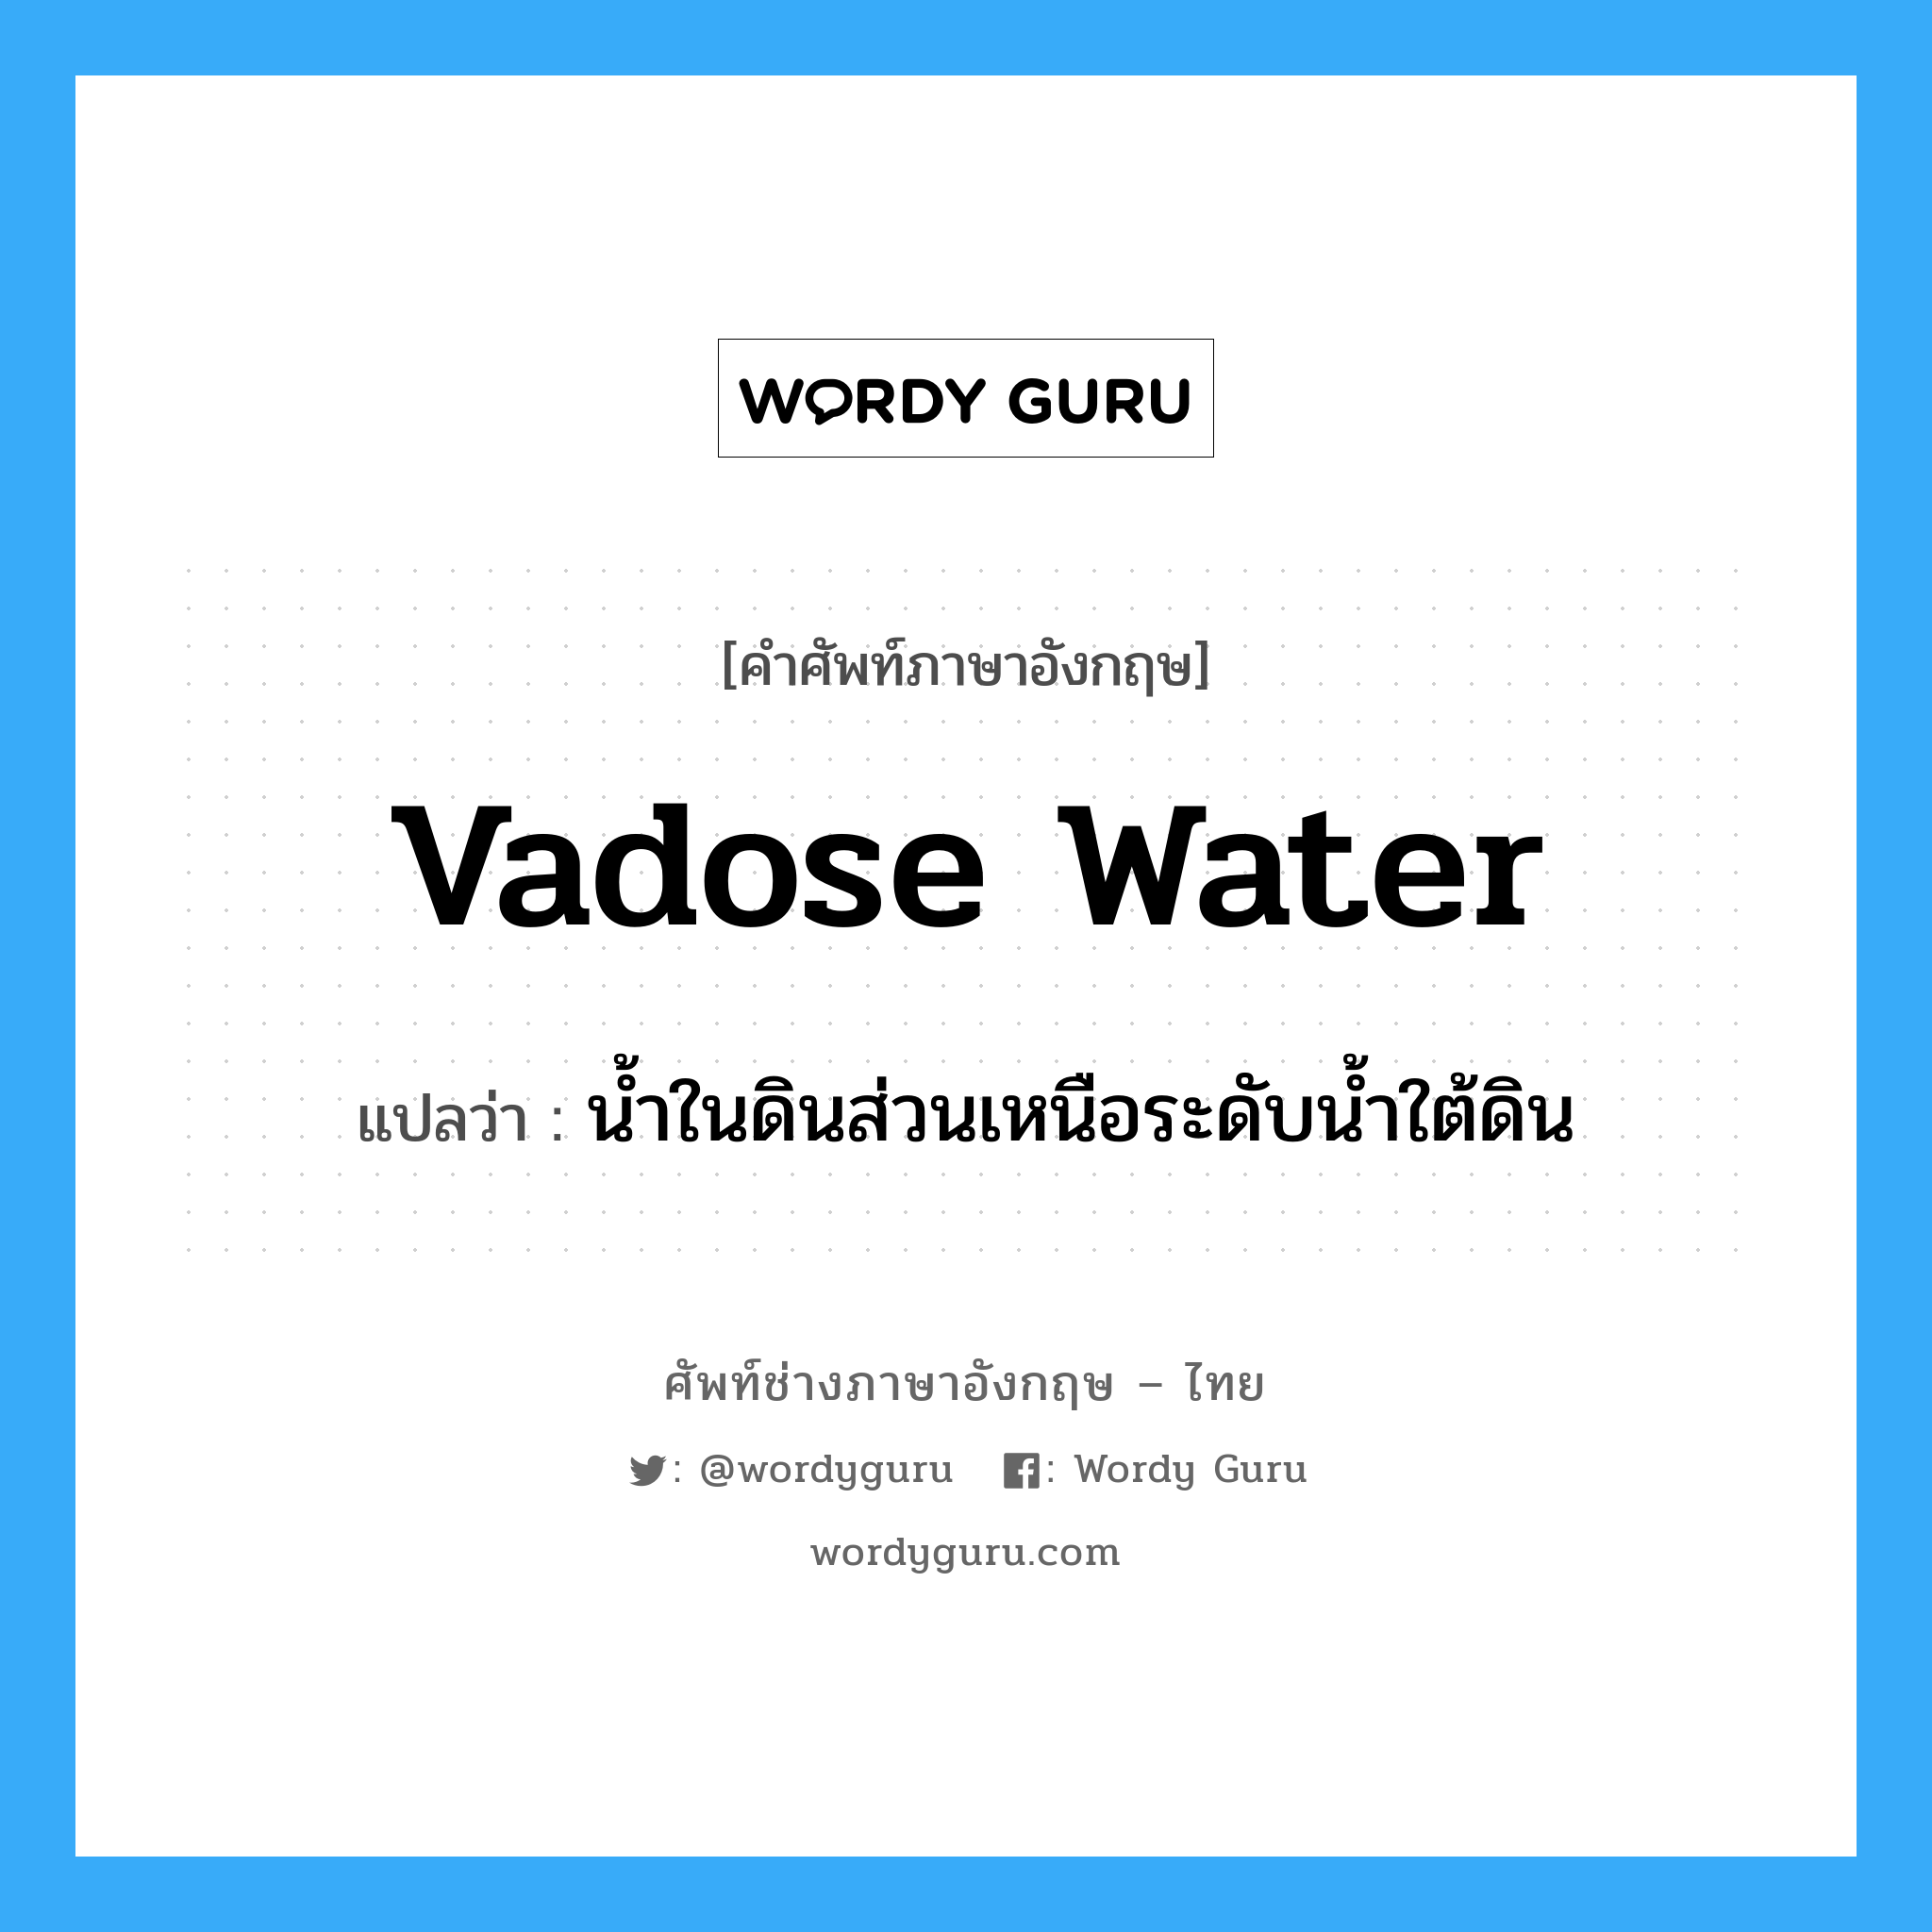 vadose water แปลว่า?, คำศัพท์ช่างภาษาอังกฤษ - ไทย vadose water คำศัพท์ภาษาอังกฤษ vadose water แปลว่า น้ำในดินส่วนเหนือระดับน้ำใต้ดิน